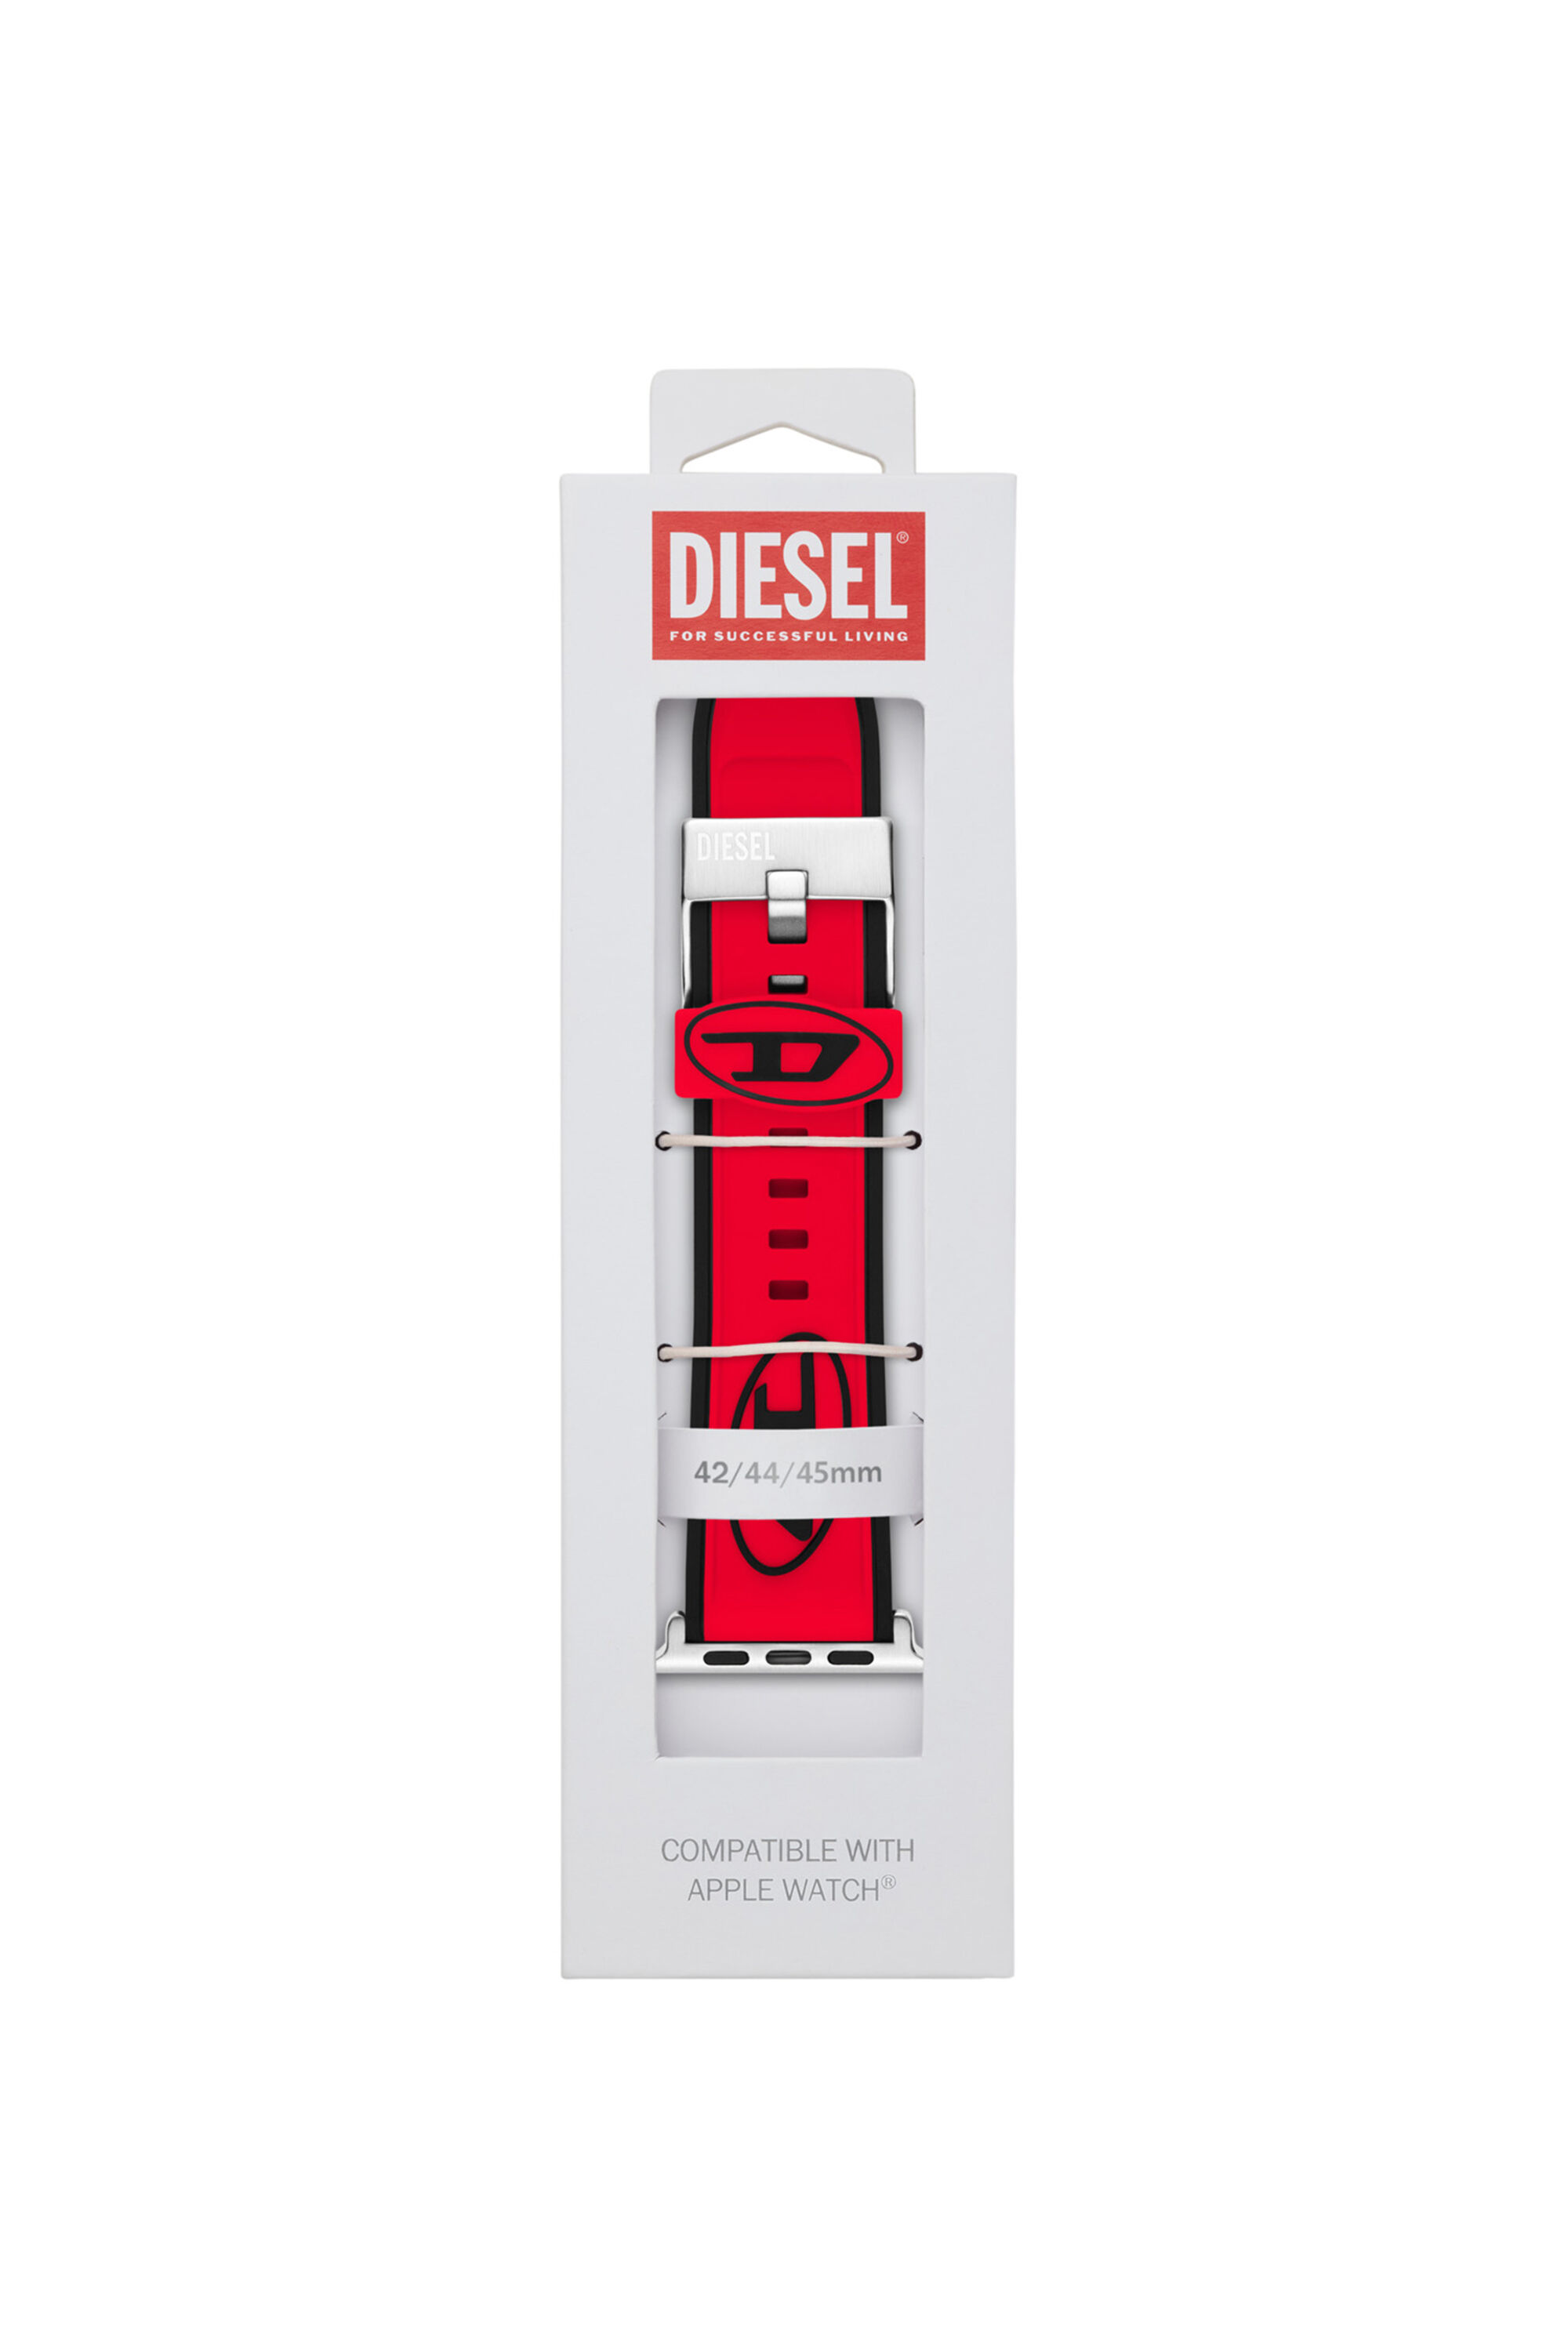 Diesel - DSS010, Rojo - Image 2